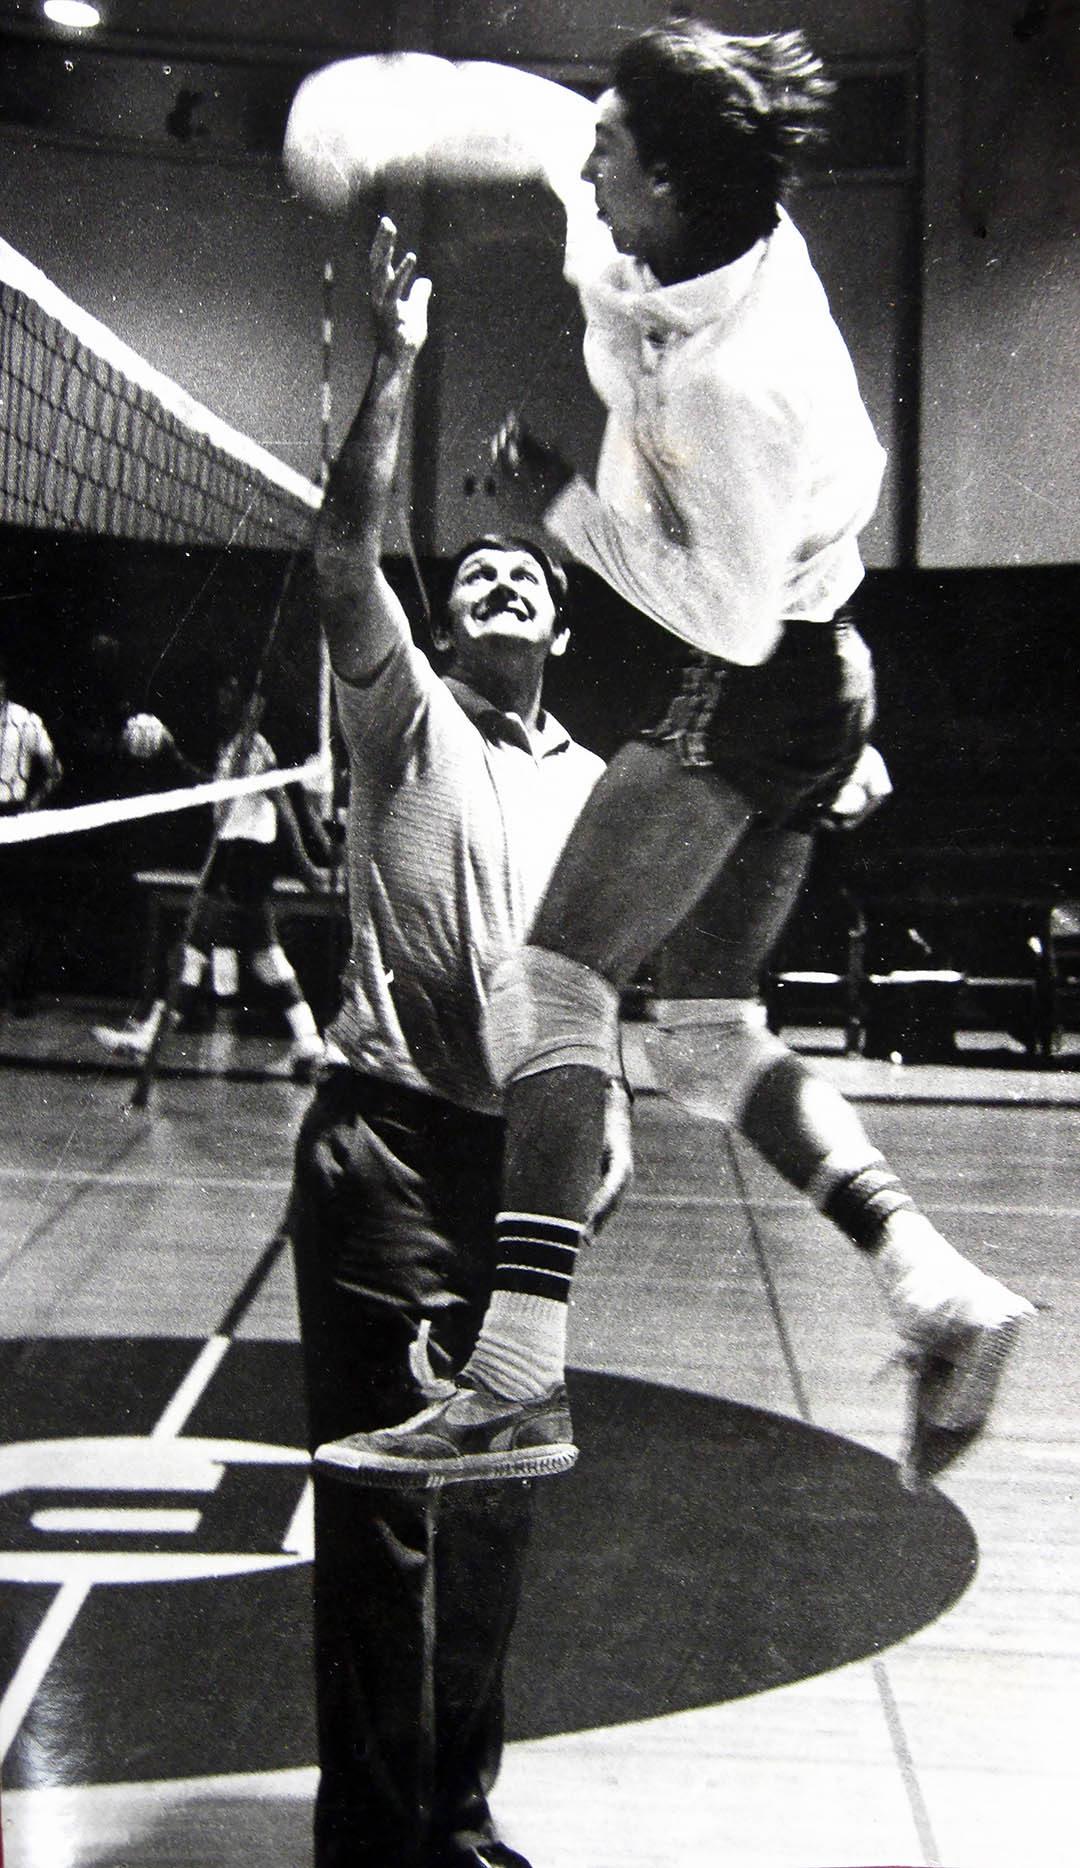 Ken Stanley in Volleyball Practice